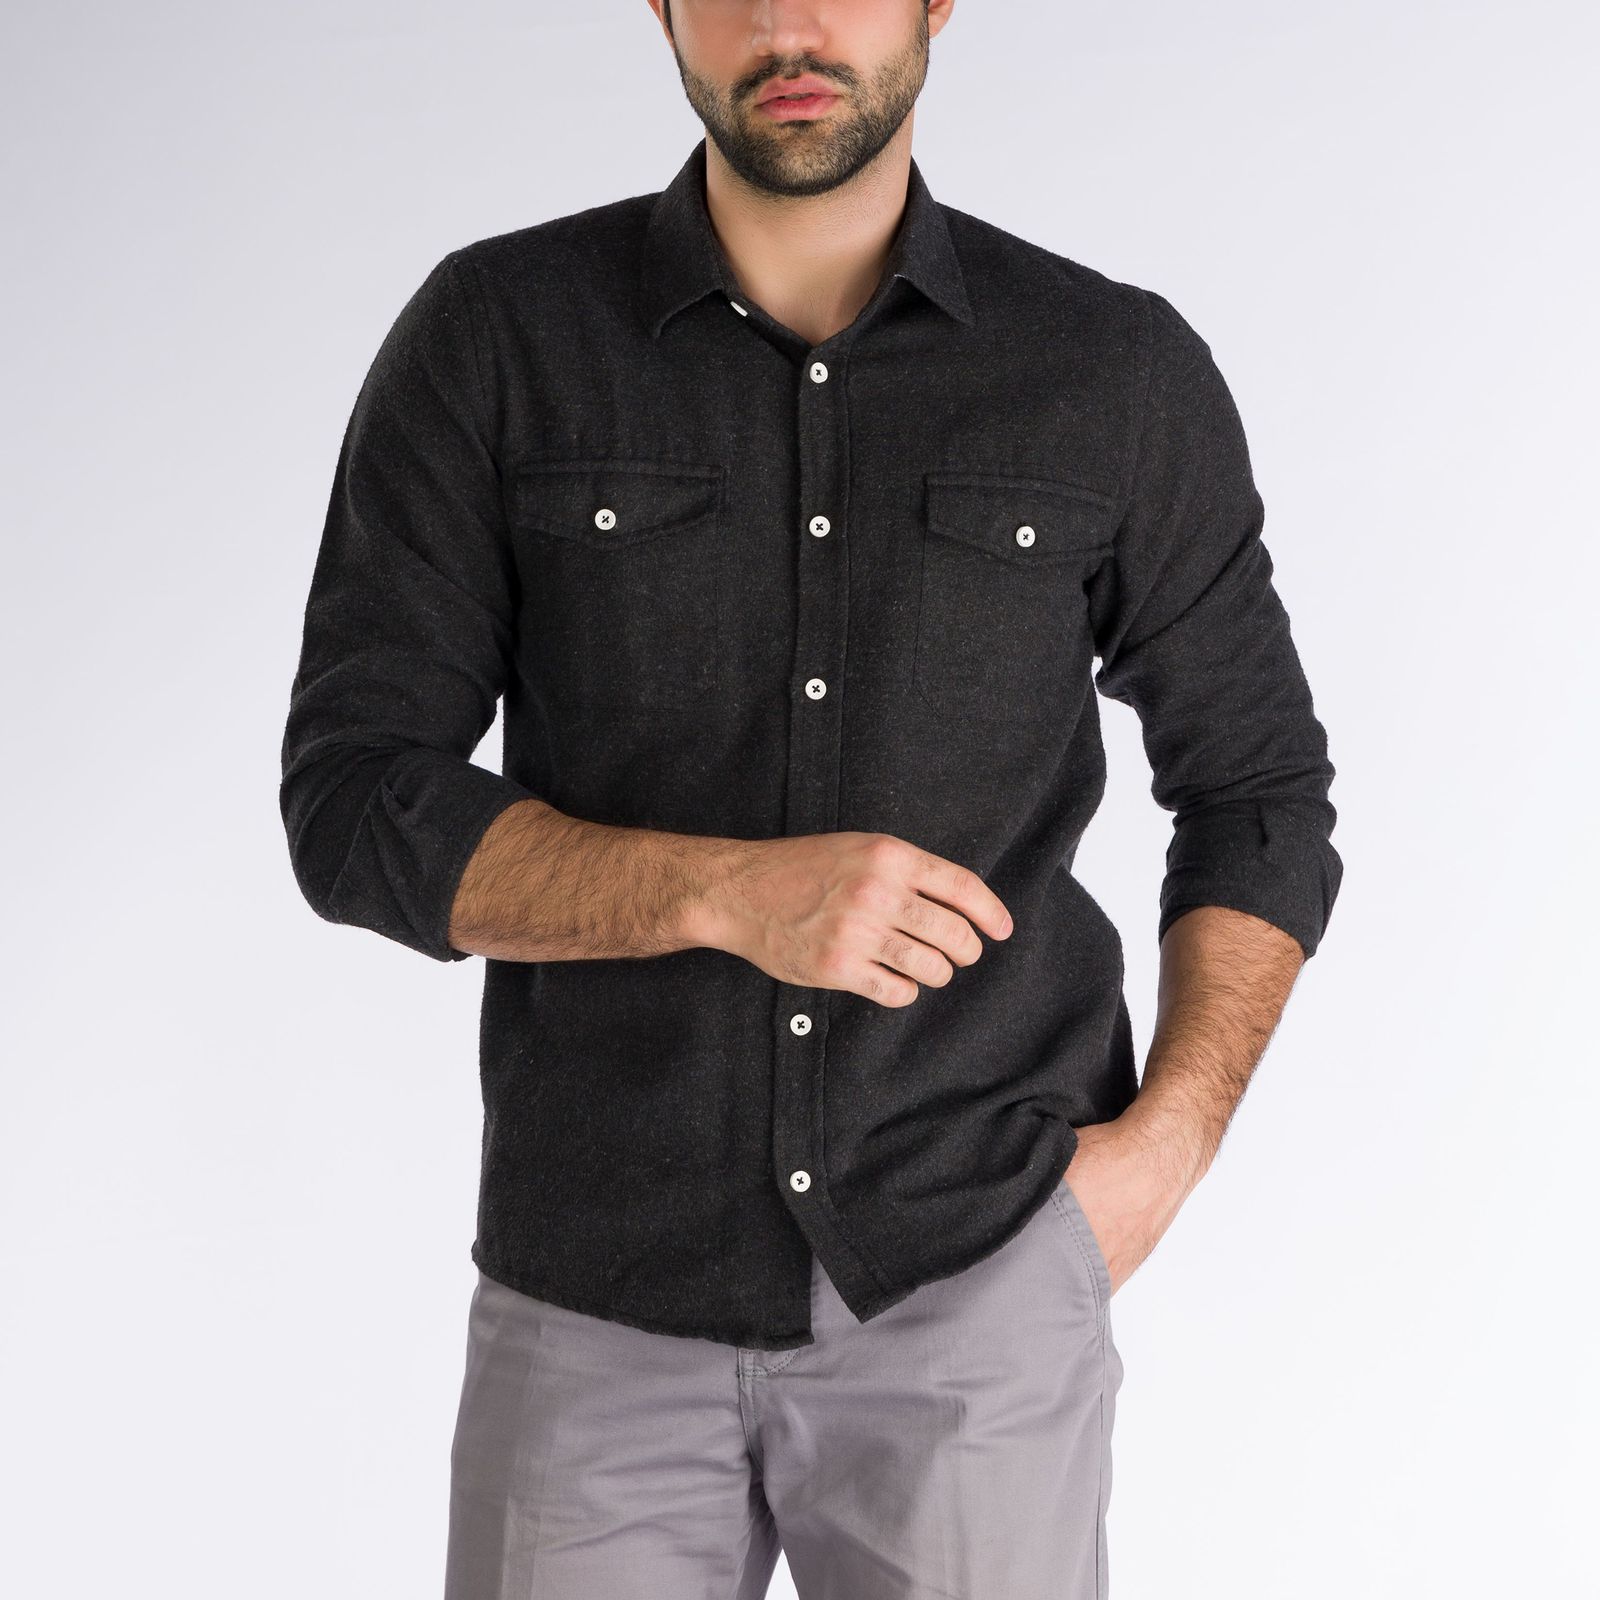 پیراهن آستین بلند مردانه پاتن جامه مدل پشمی کد 102721020210846 رنگ مشکی